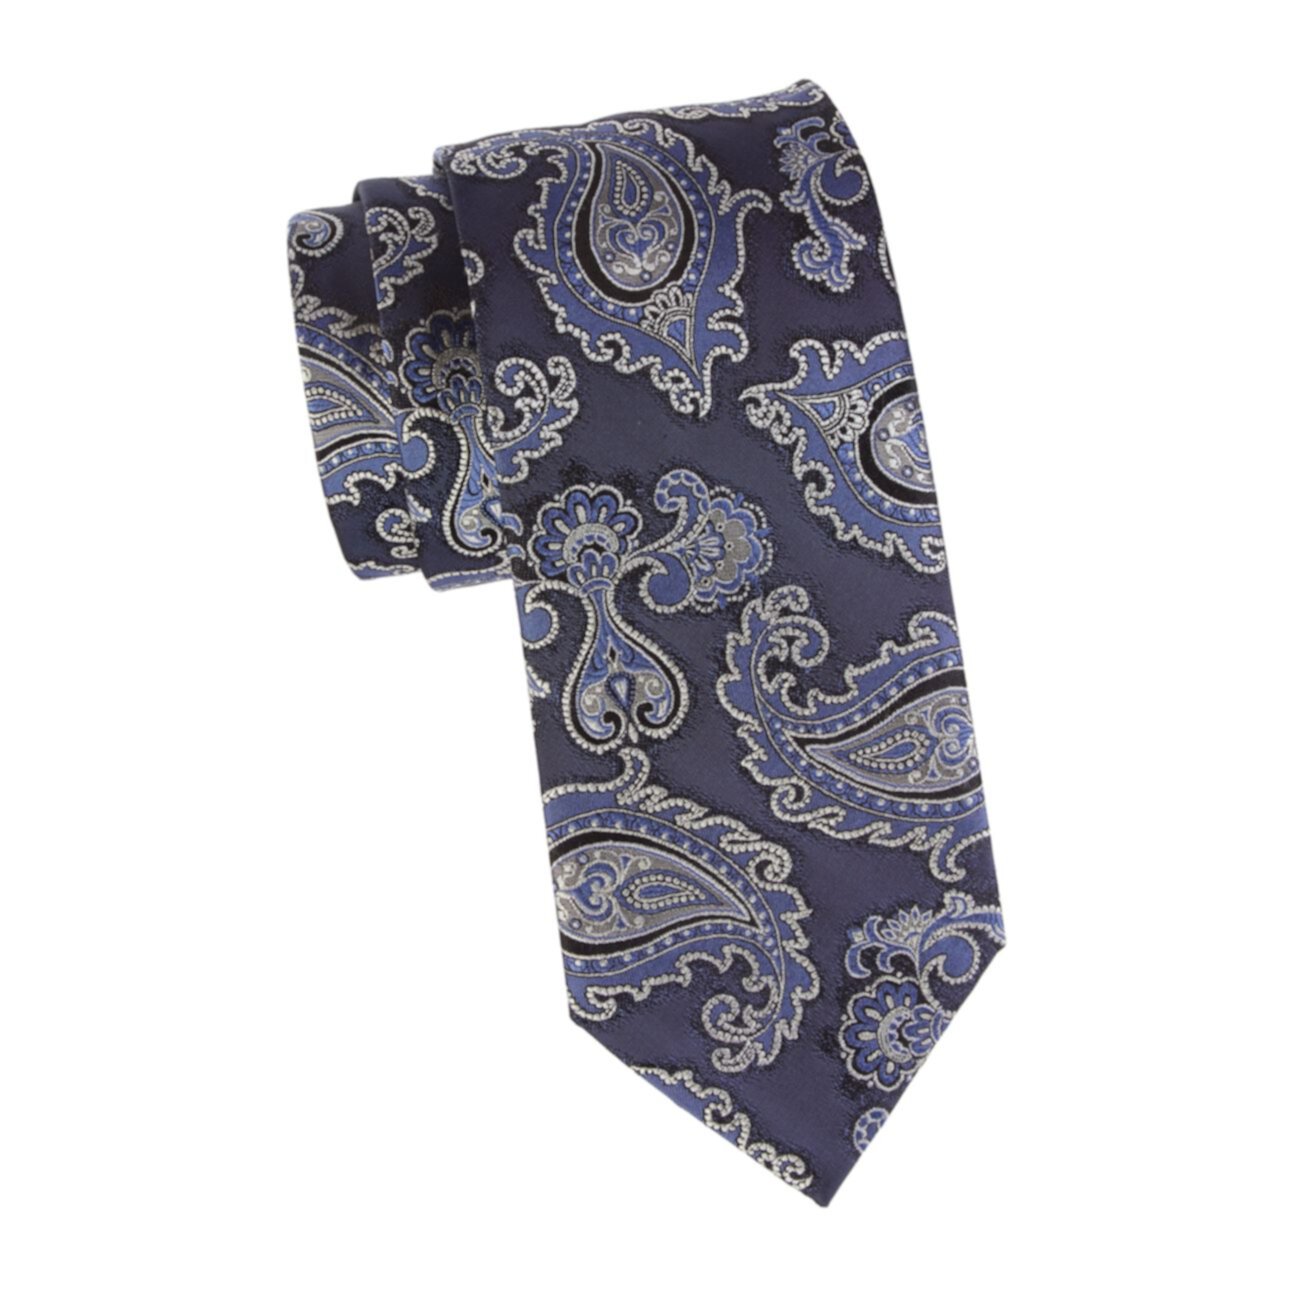 Шелковый галстук с принтом пейсли Brioni